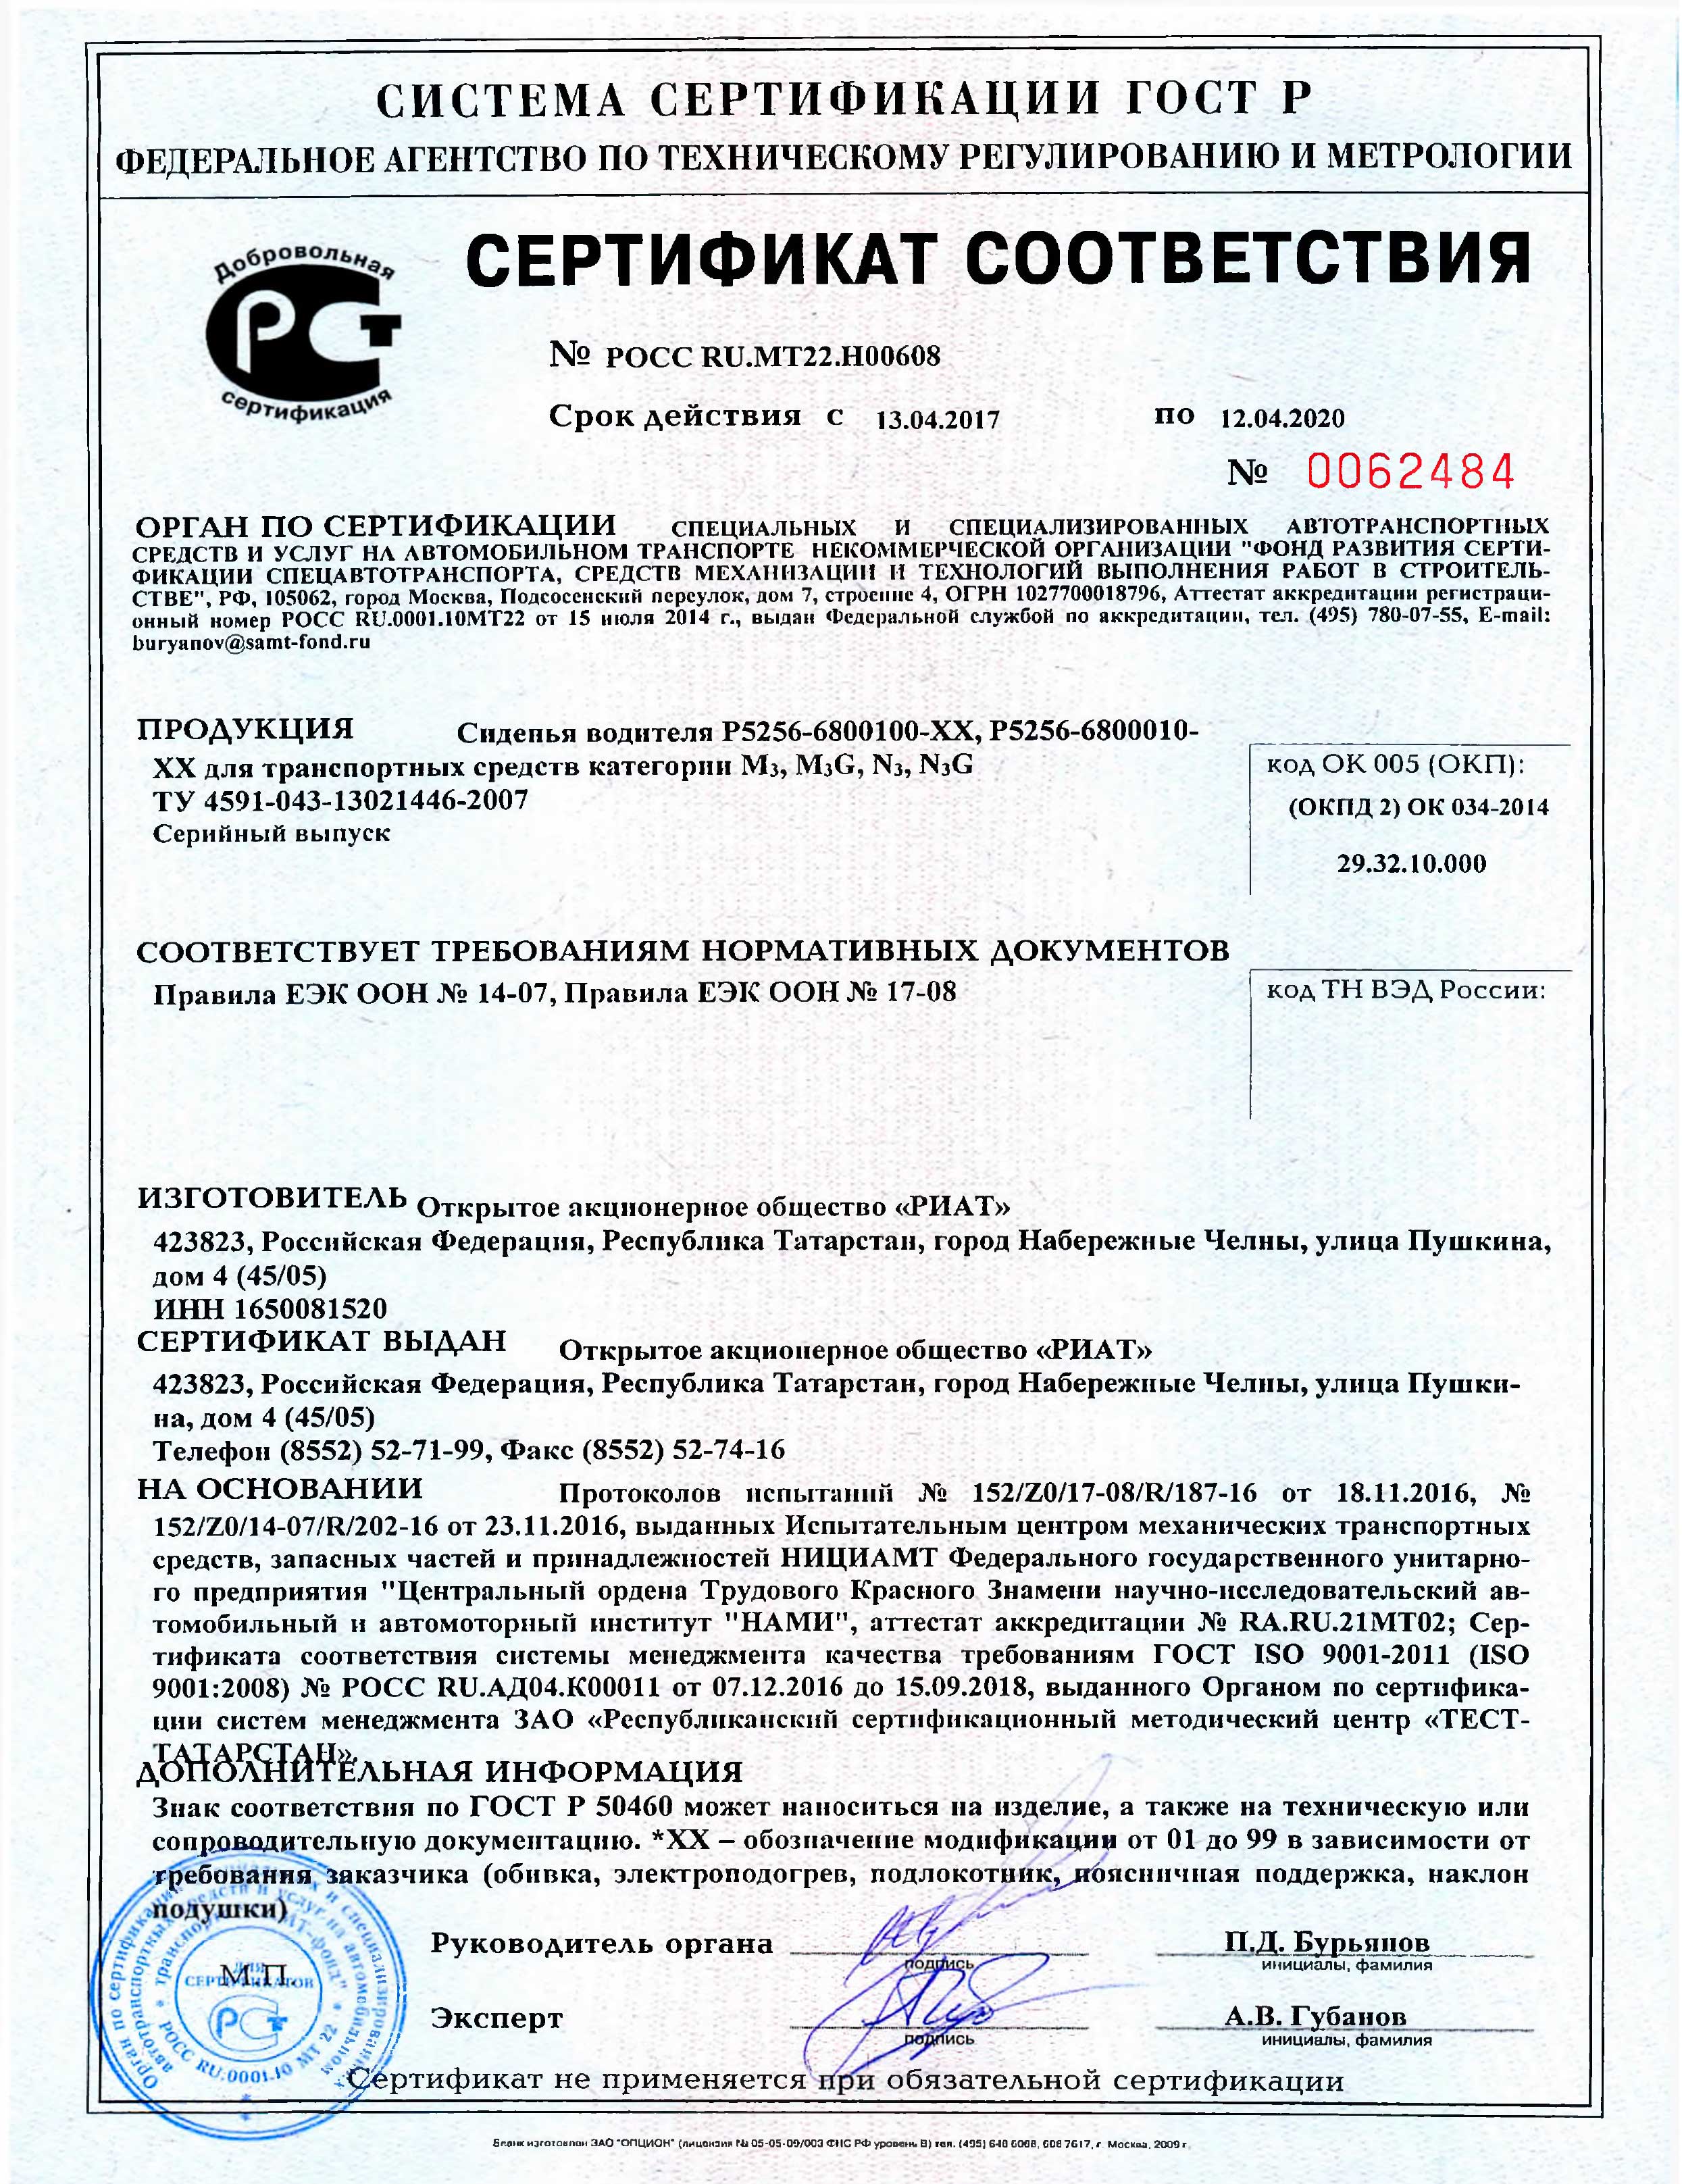 Сертификат сиденья РИАТ POCC-RU.MT22.H00608